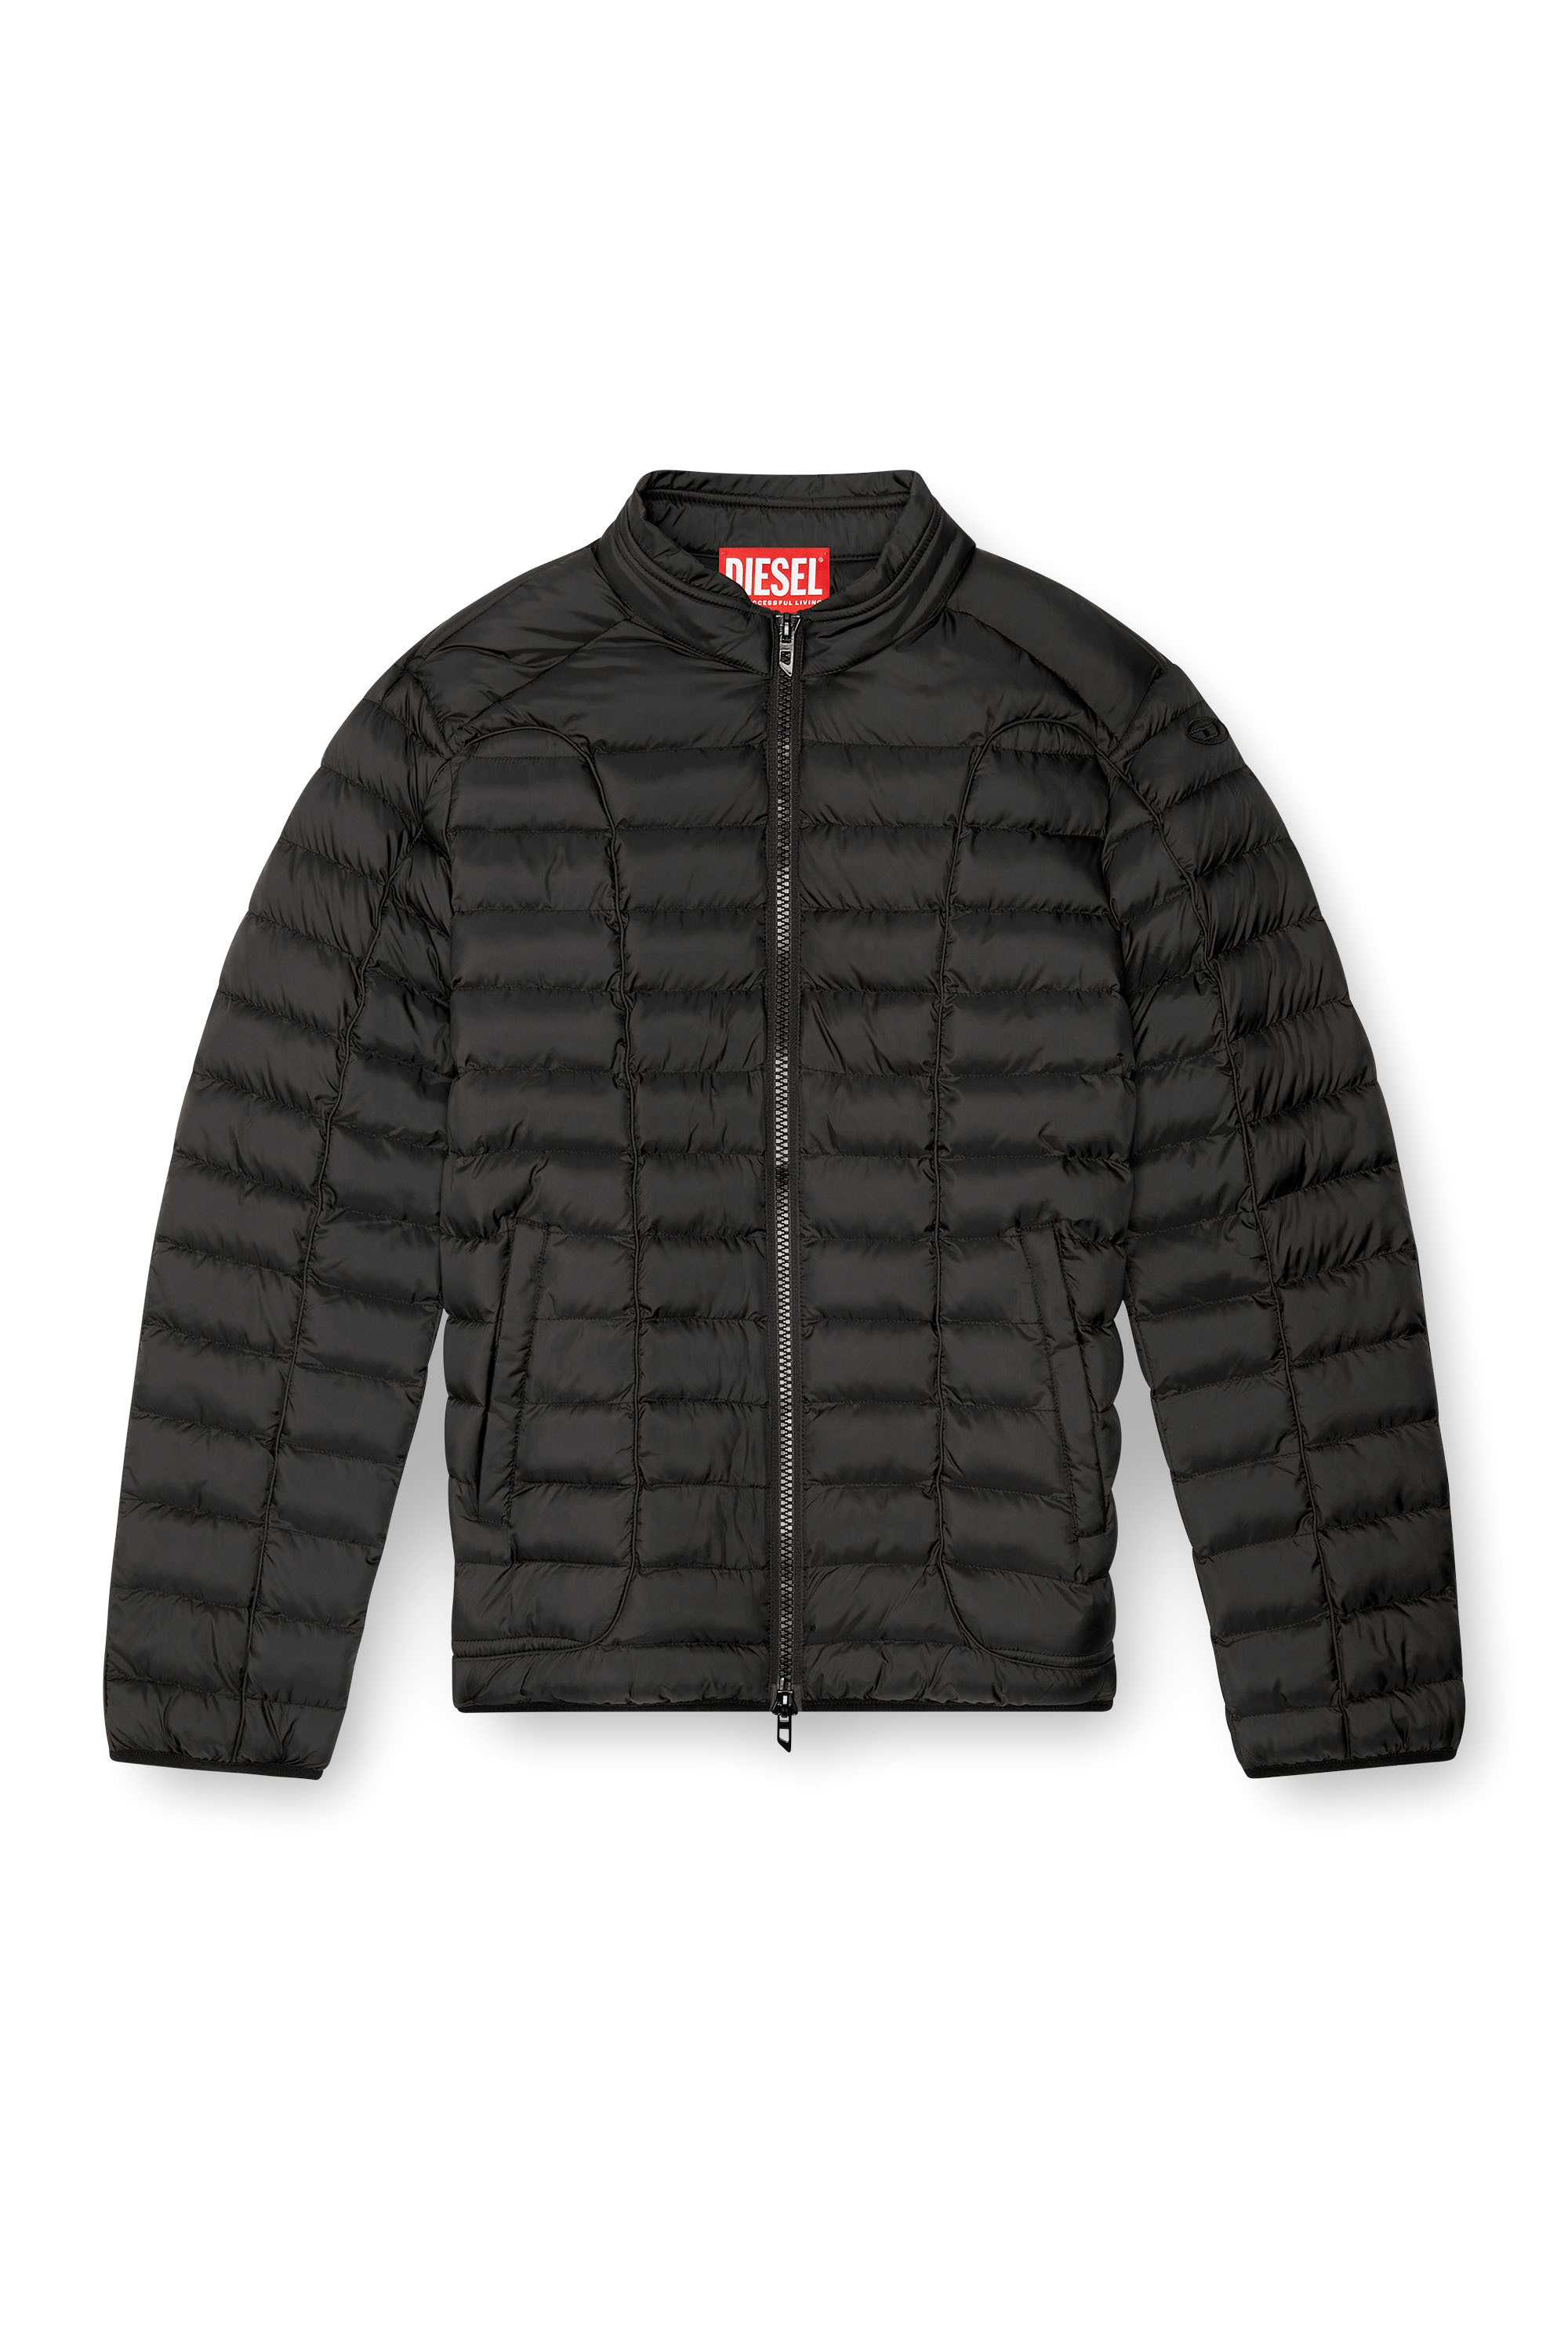 Diesel - W-PILOT, Man Puffer jacket in light nylon in Black - Image 3